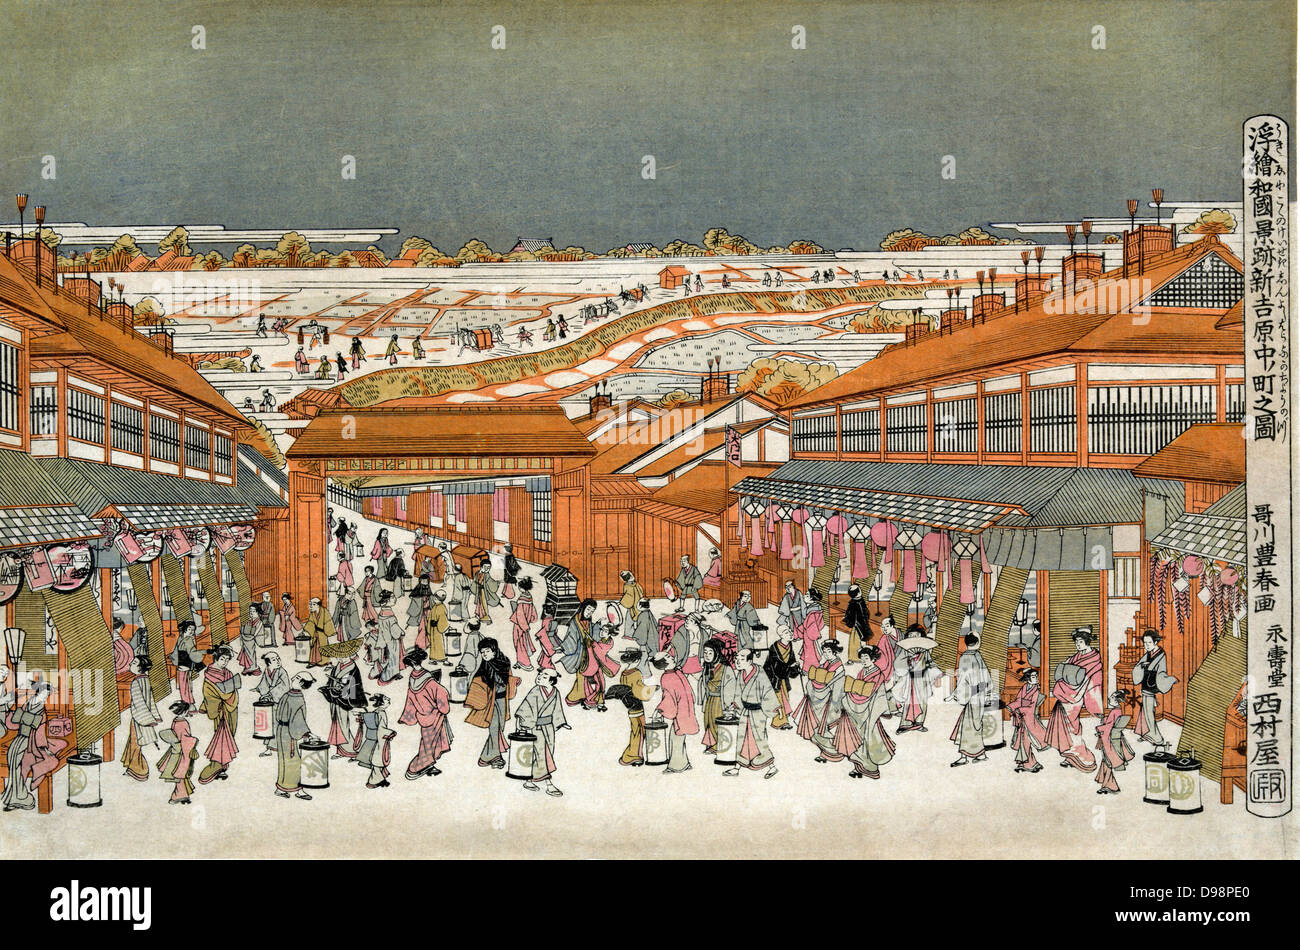 Perspektive einen Blick auf die berühmten Ort der Japan: Nakanocho in Shin-Yoshiwaro, c 1775. Utagawa Toyoharu (1735-1814) japanischen Ukiyo-e Künstlers. Teehäusern und Geschäfte Futter geschäftigen Boulevard in der Nacht durch die Pforte der Freude Viertel von Tokio. Stockfoto